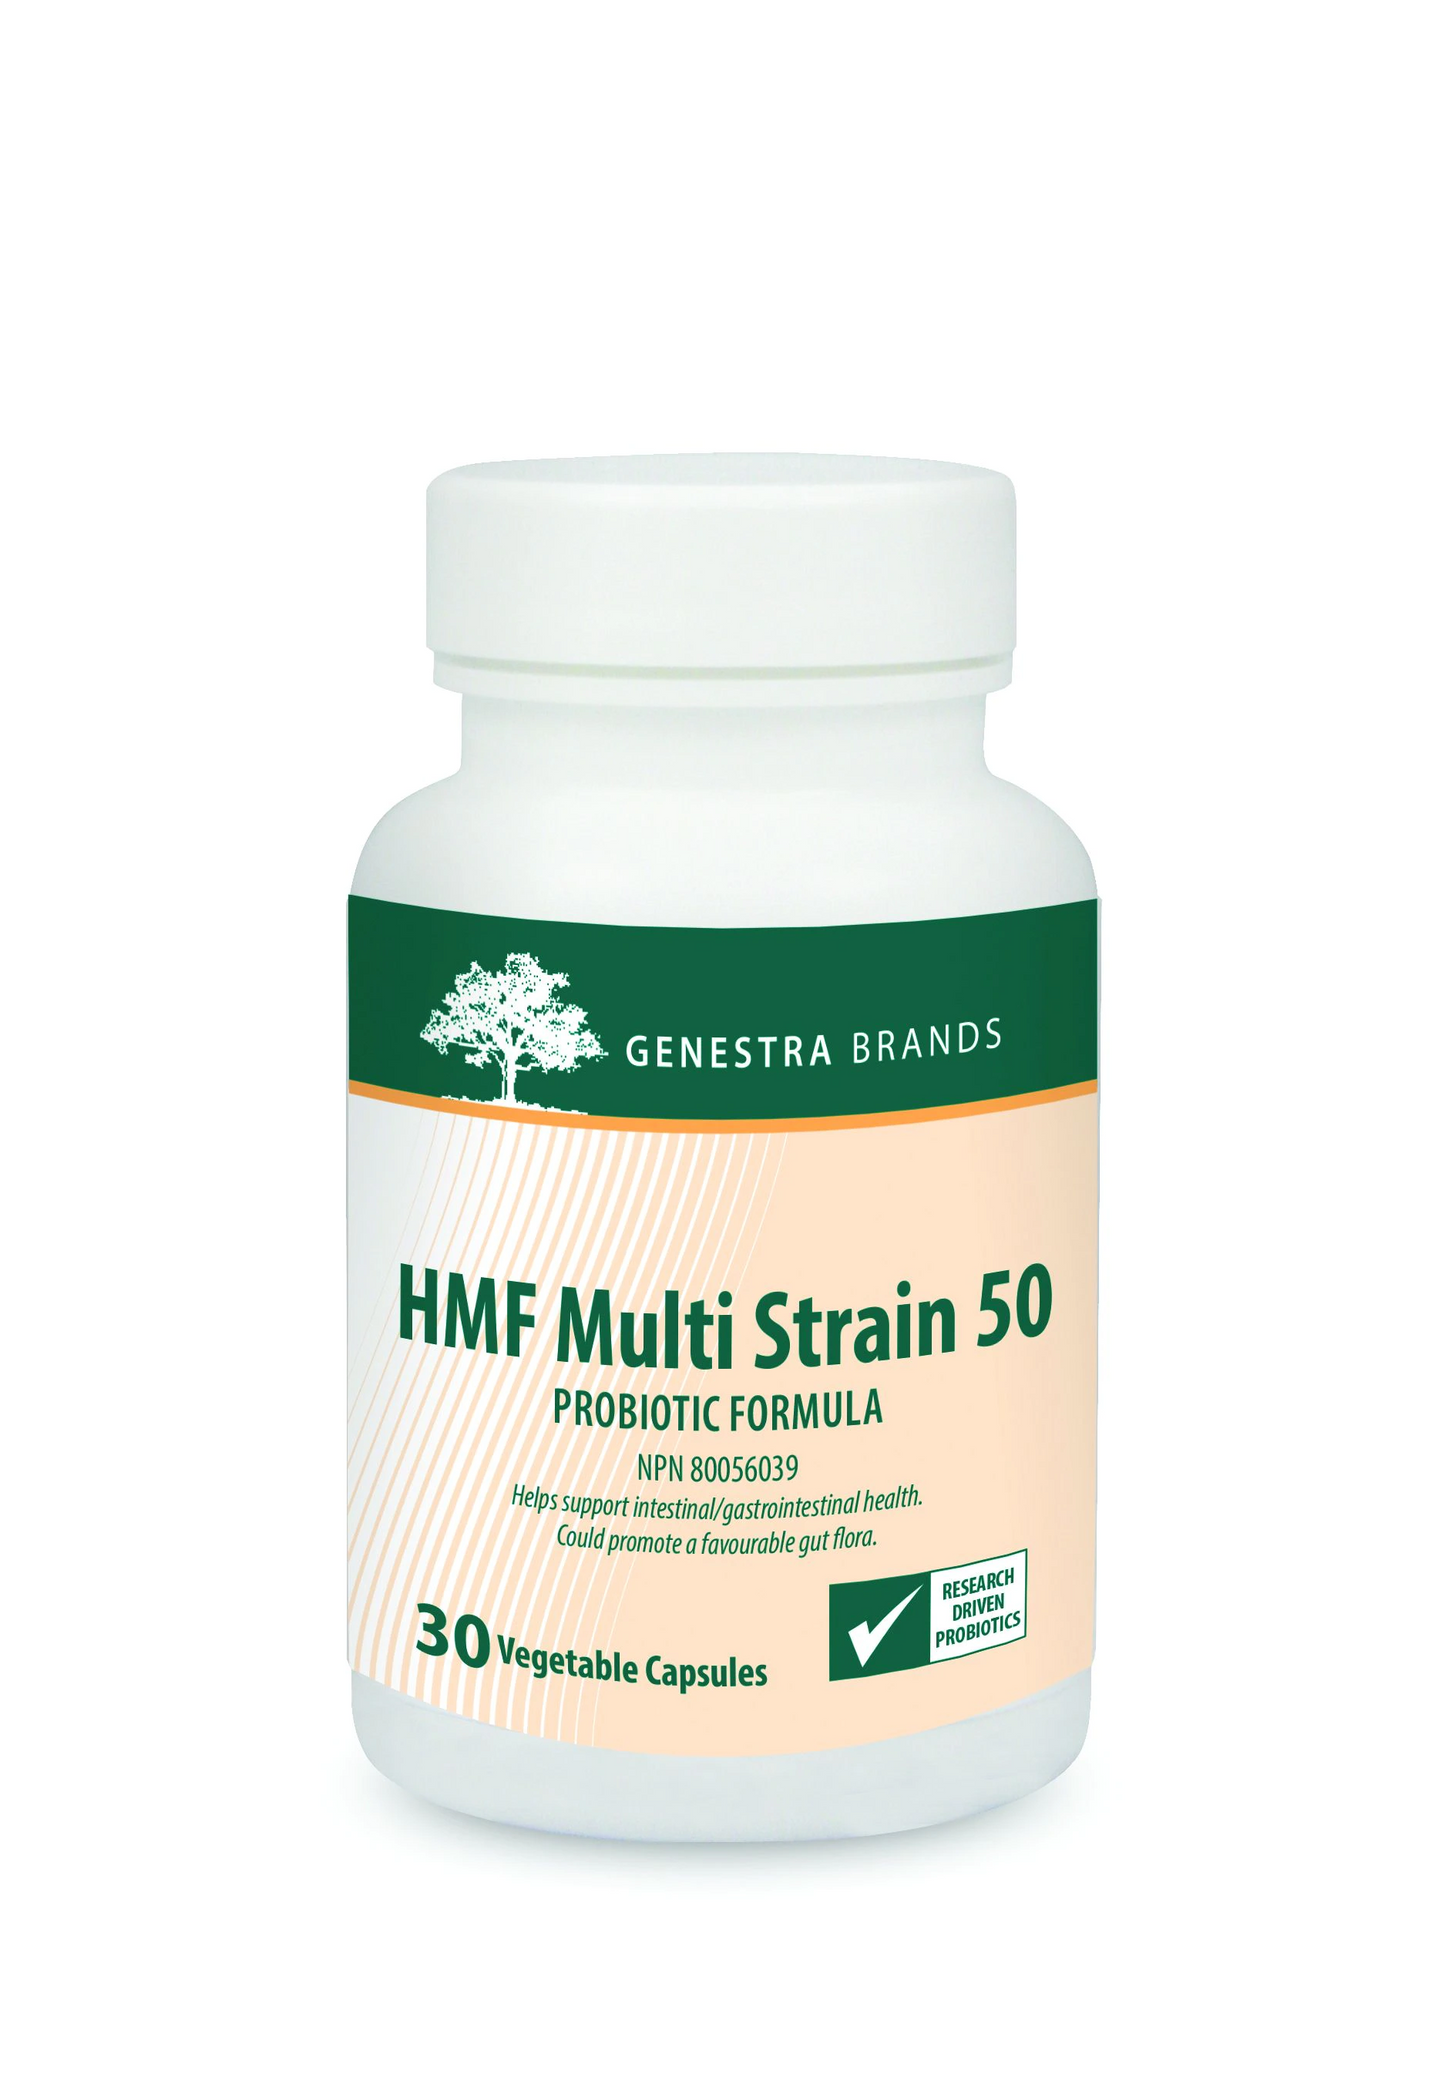 HMF Multi Strain 50